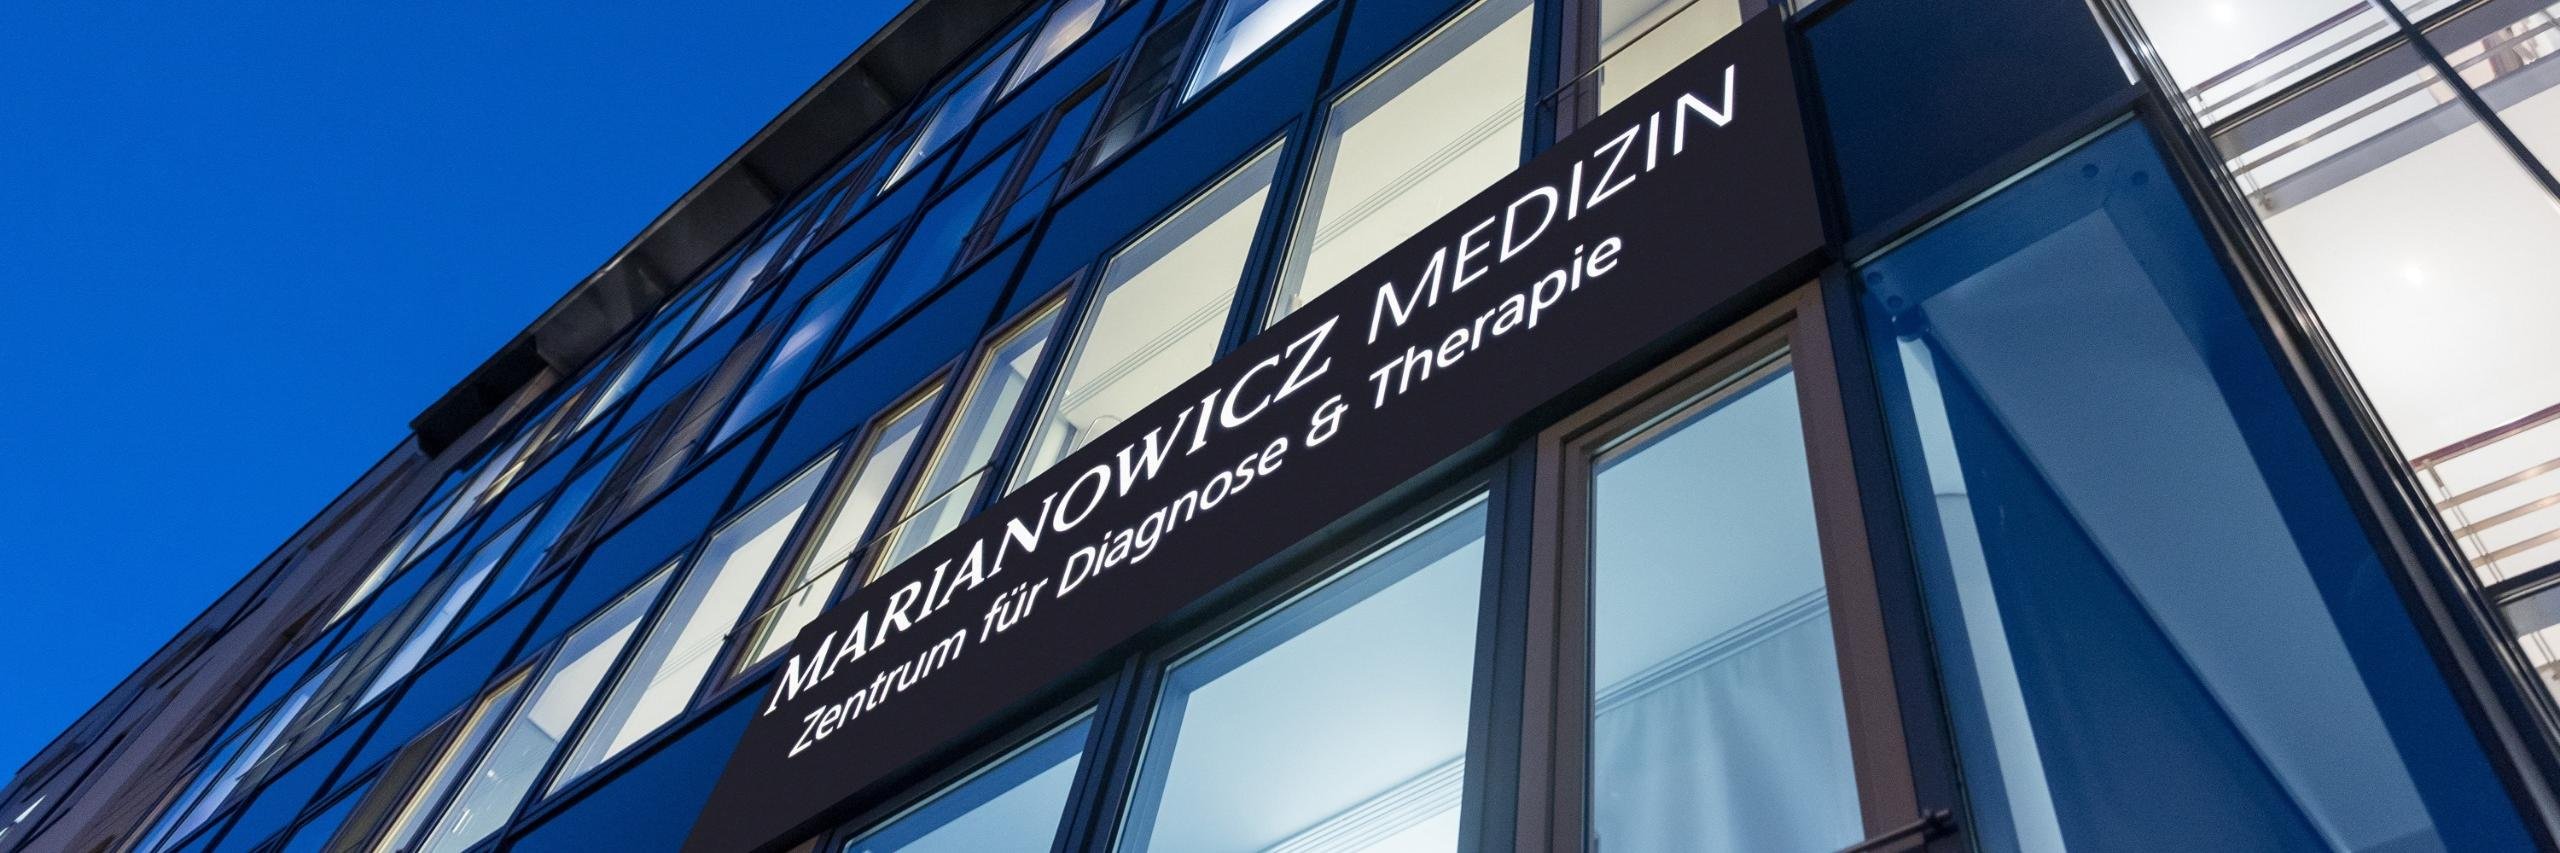 Außenfassade des Marianowicz Zentrums für Diagnose & Therapie in München-Bogenhausen